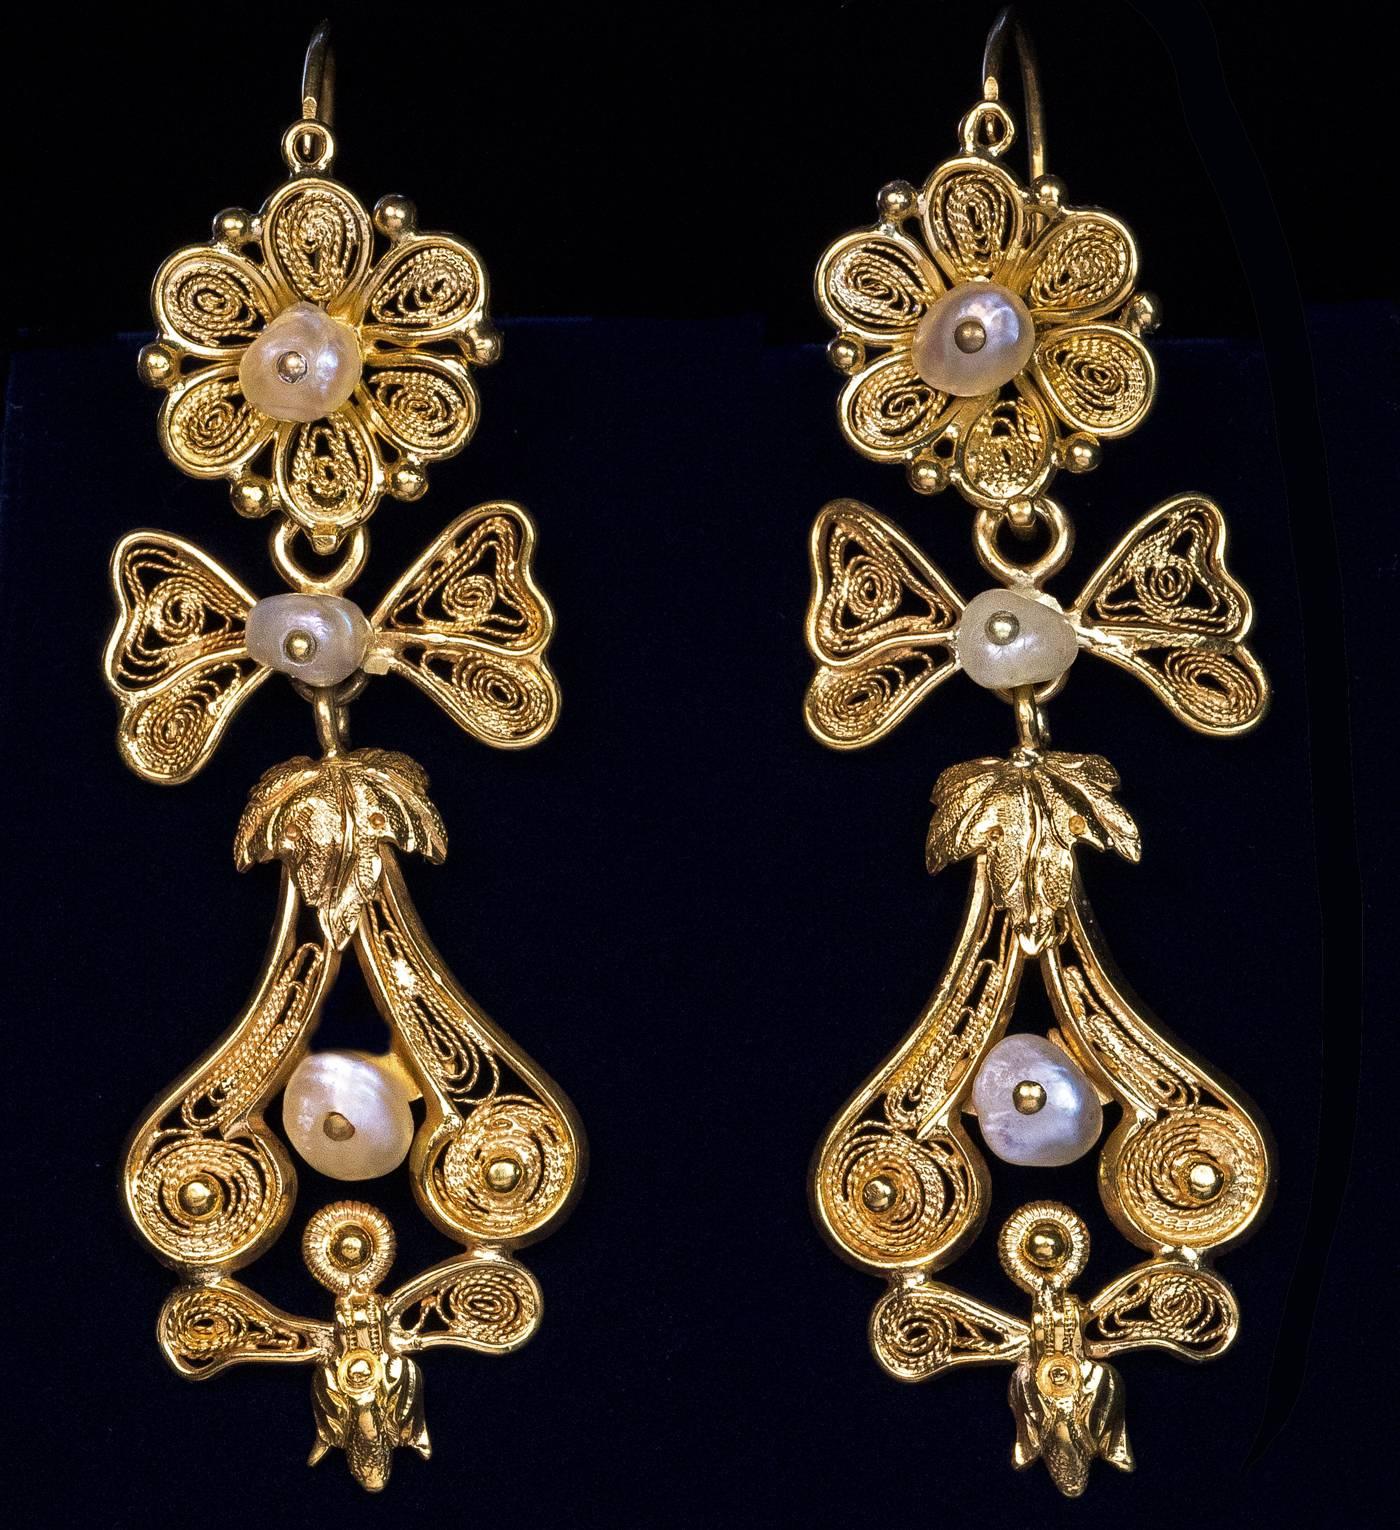 1800s earrings